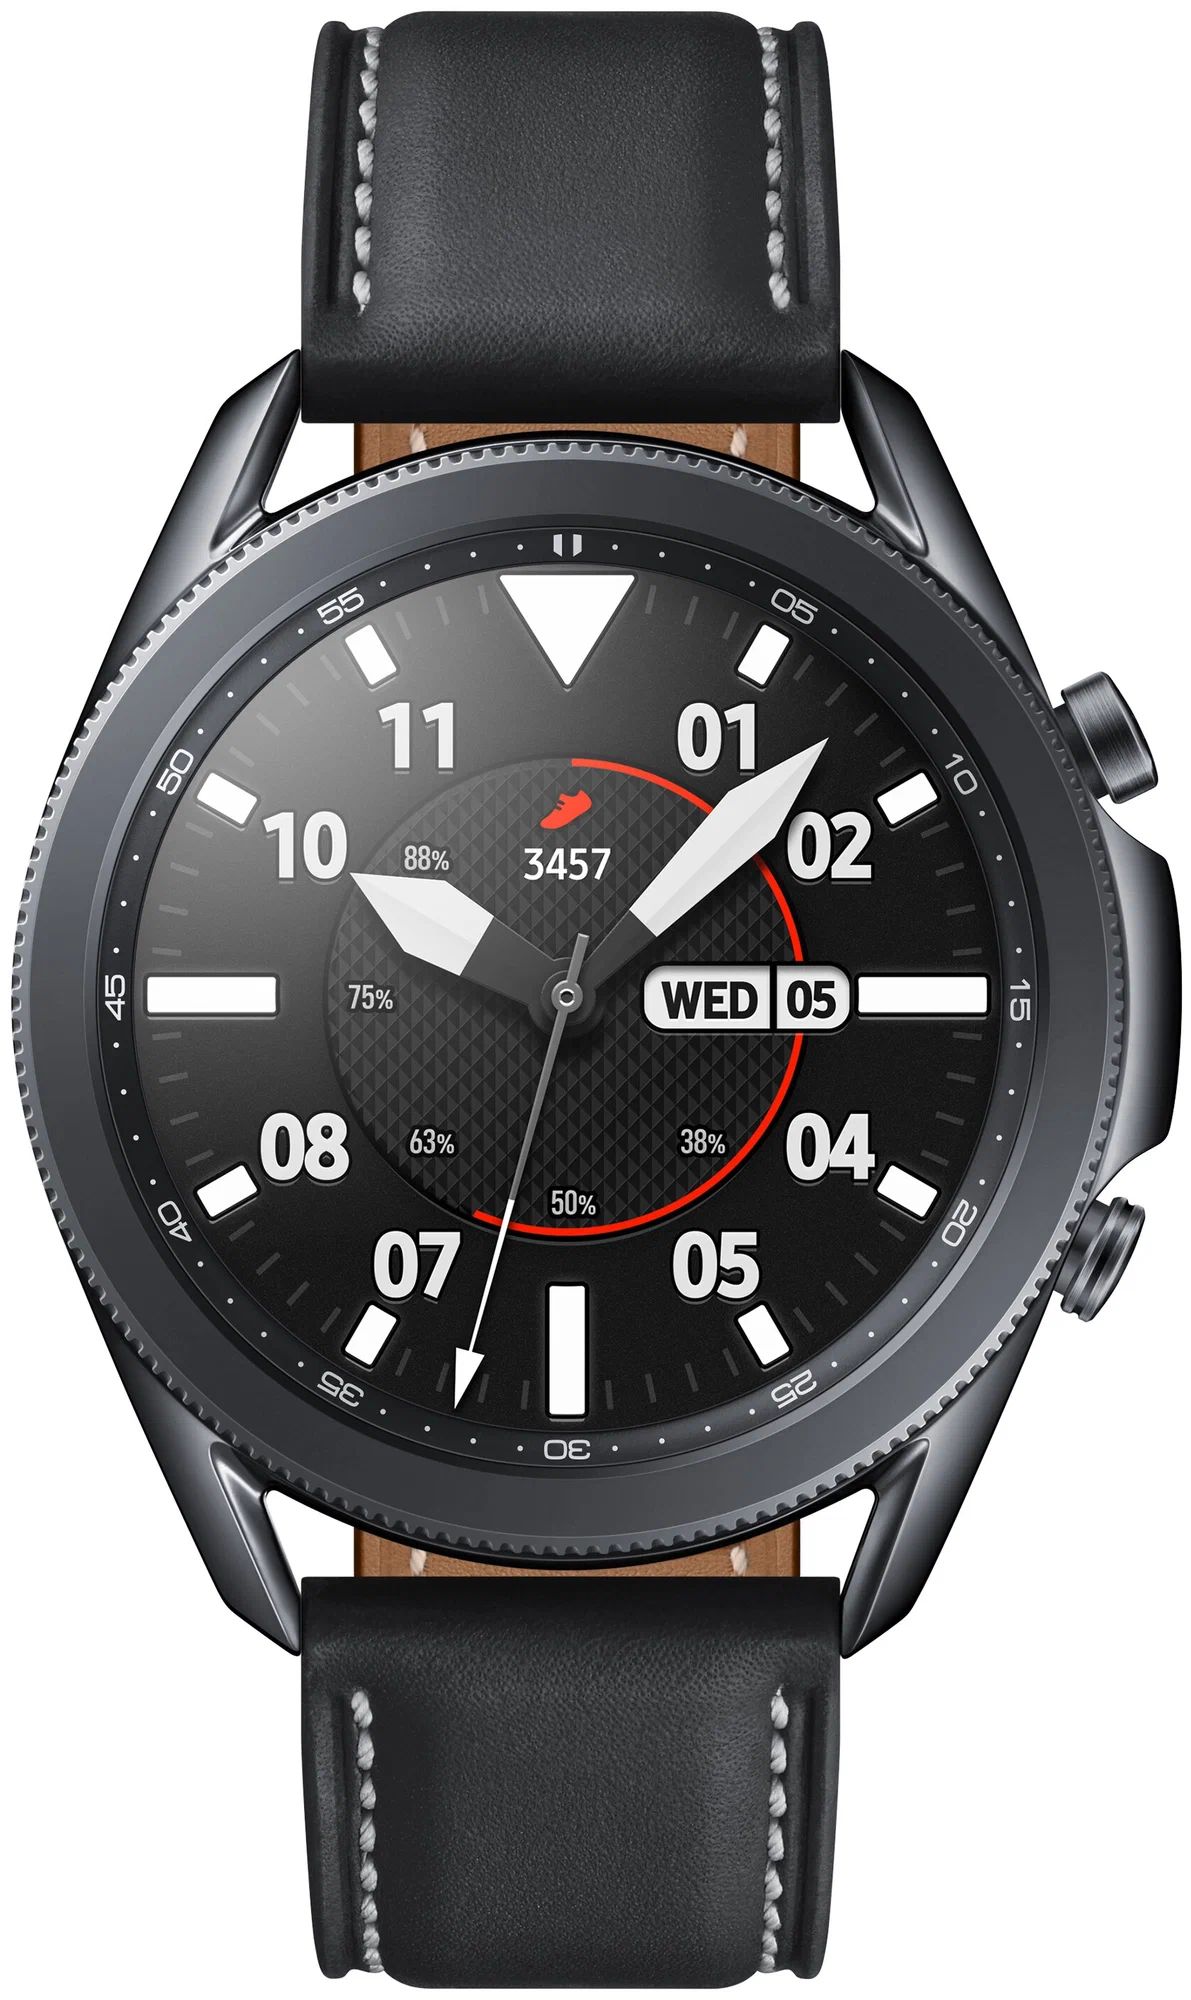 Смарт-часы Samsung Galaxy Watch 3 SM-R840 Black, купить в Москве, цены в интернет-магазинах на Мегамаркет